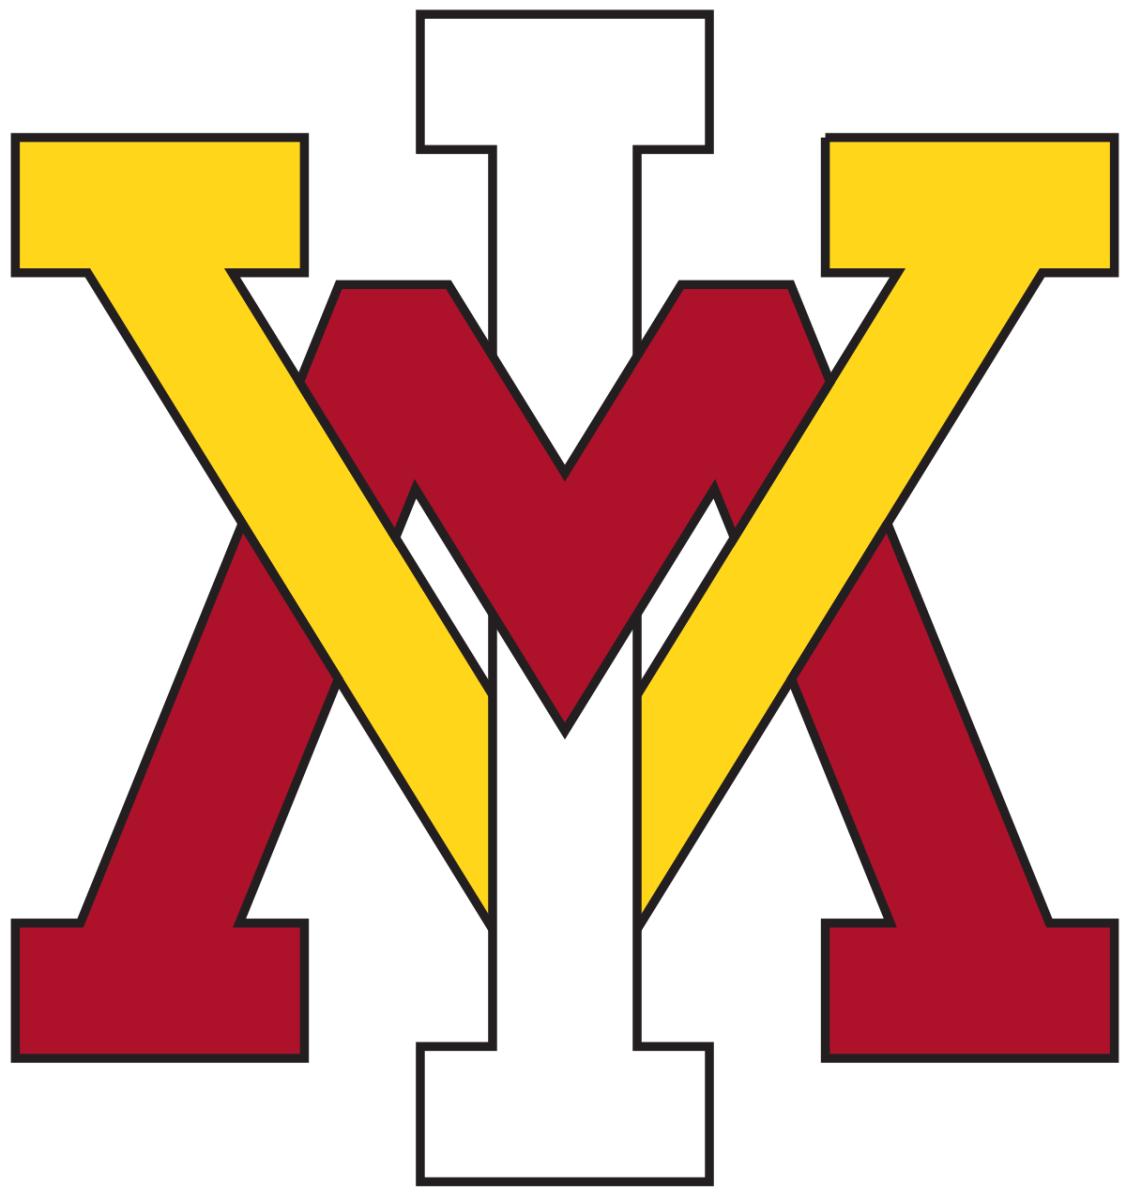 VMI vigrinia military institution keydets football logo